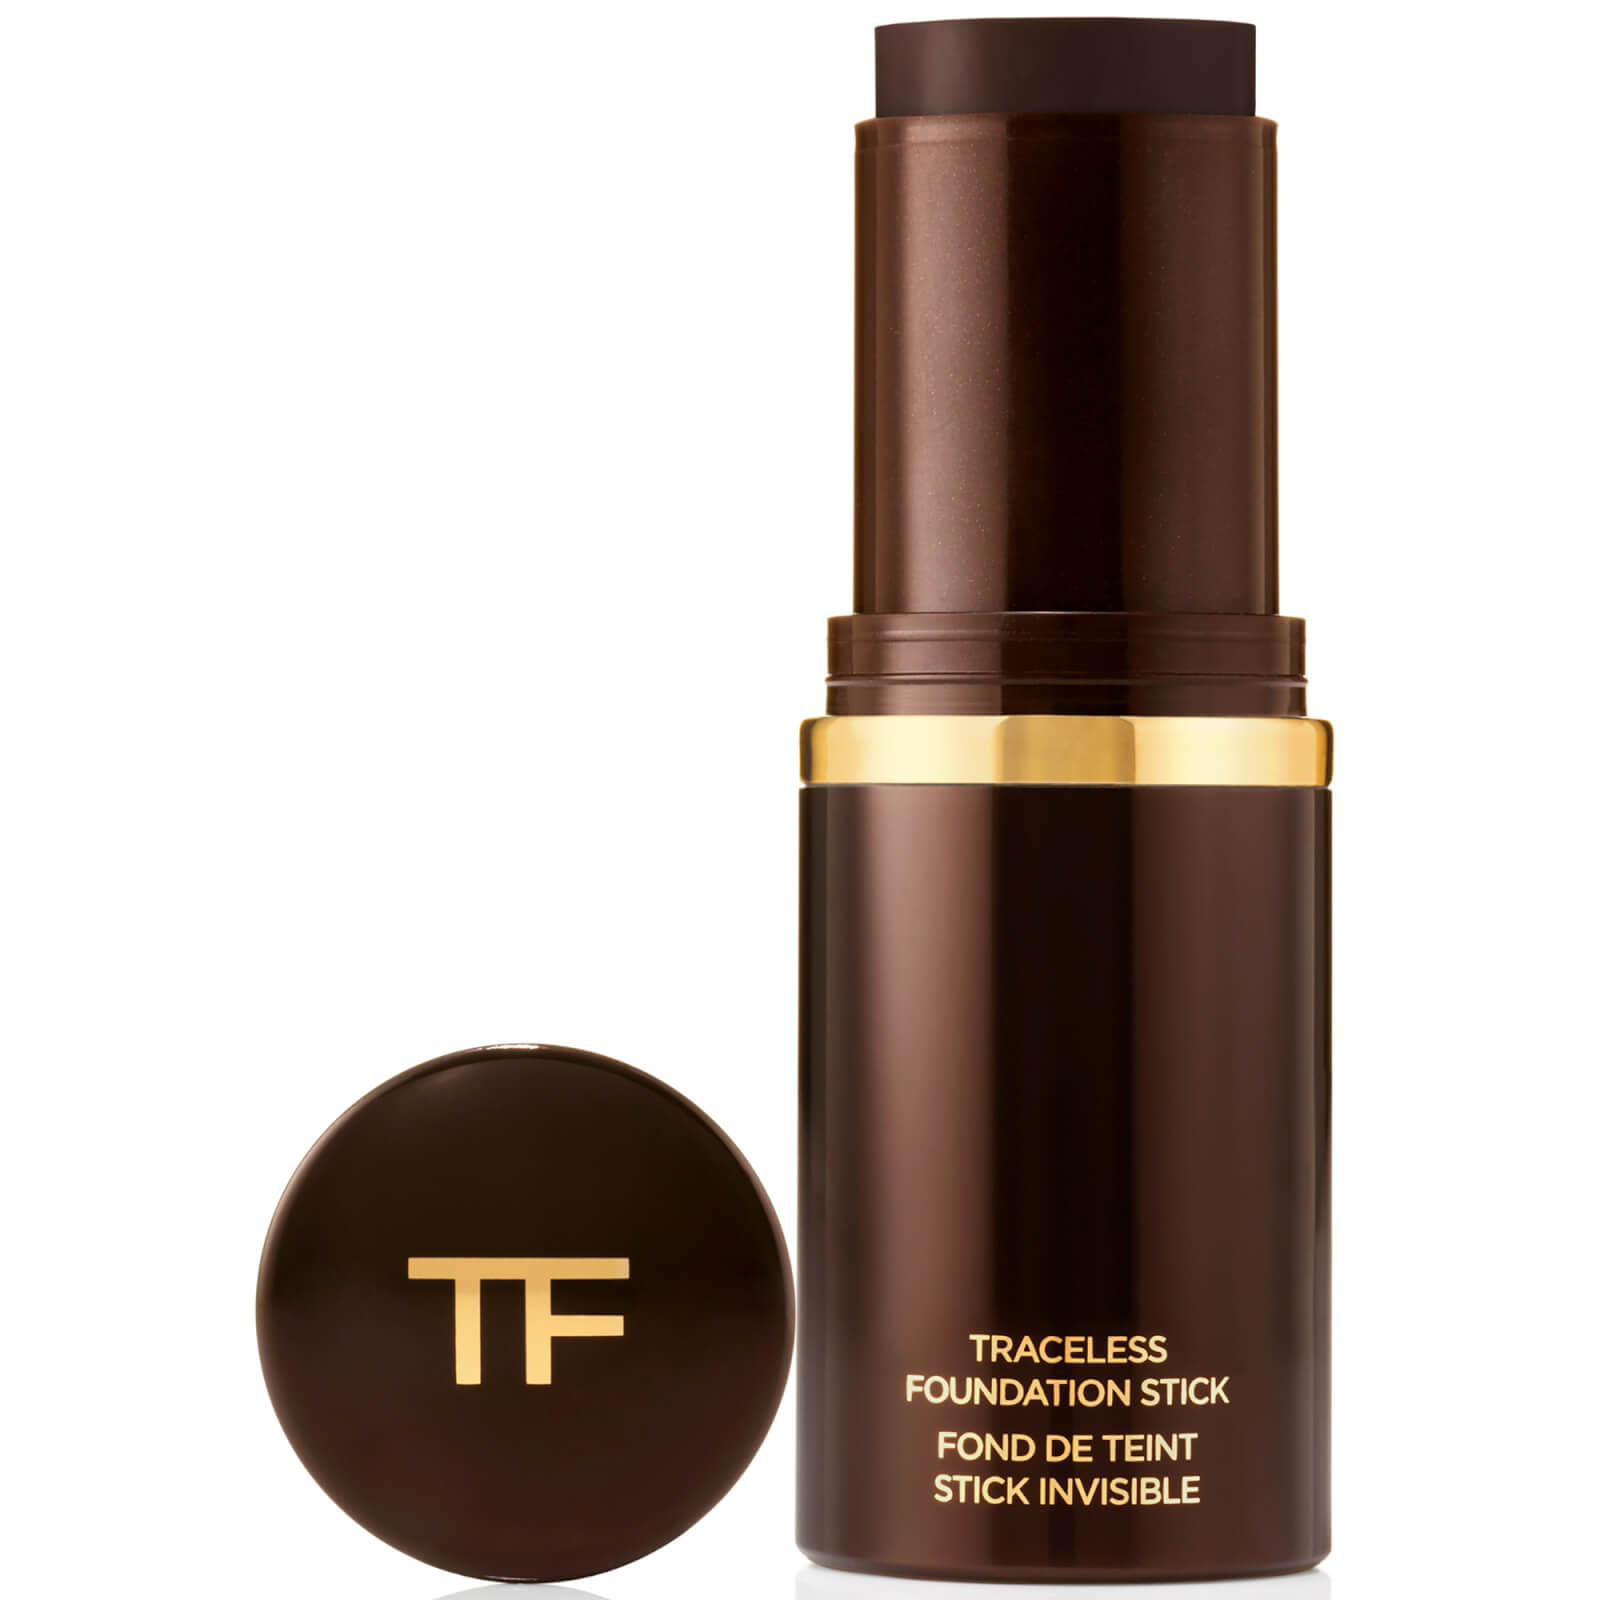 Tom Ford Traceless Foundation Stick 15g (Various Shades) - 13.0 Espresso